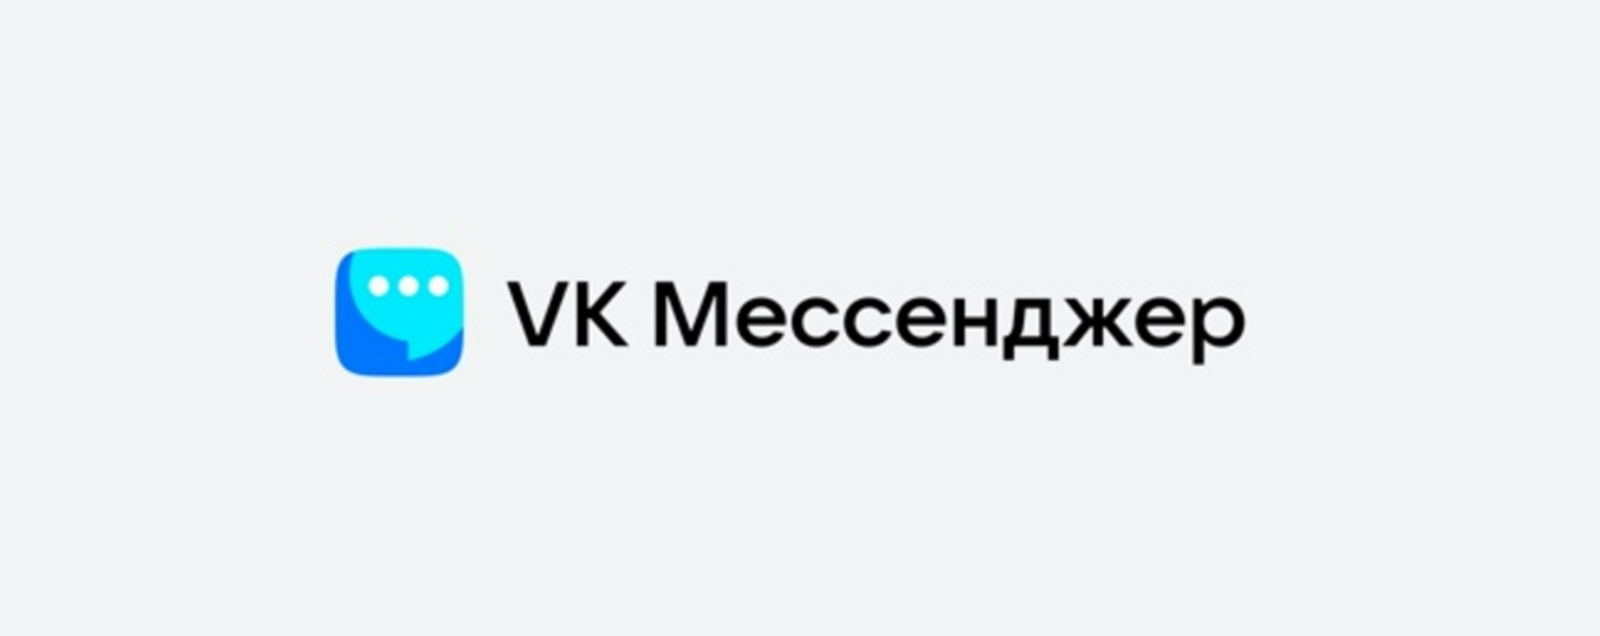 Школьники Башкортостана: Почему мы не знали о мессенджере «ВКонтакте» раньше? Он же крутой!